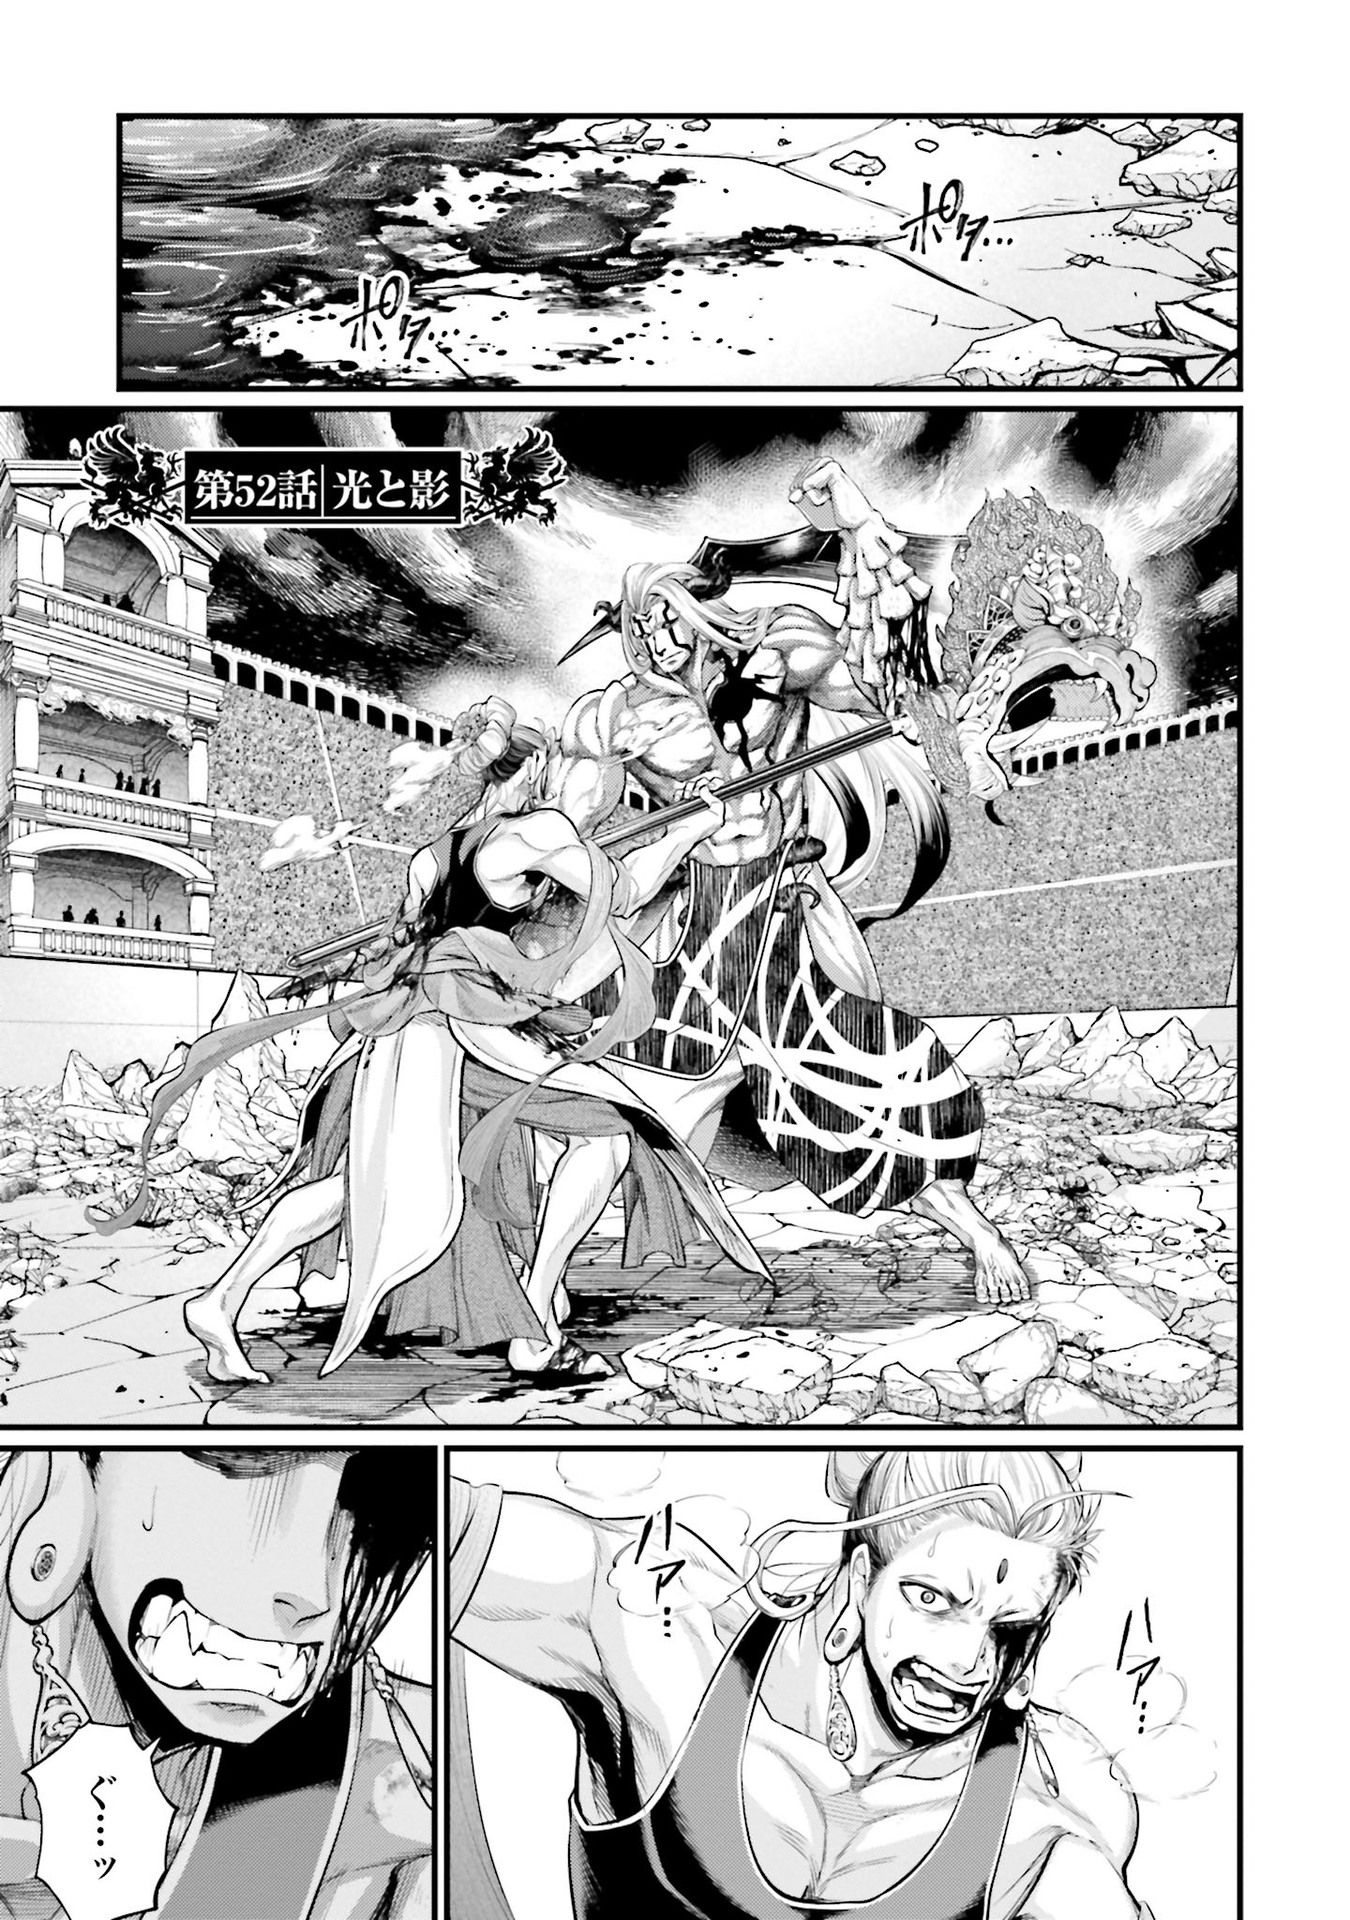 Series - Page 23 of 67 - Anime-Kage, Anime ro sub